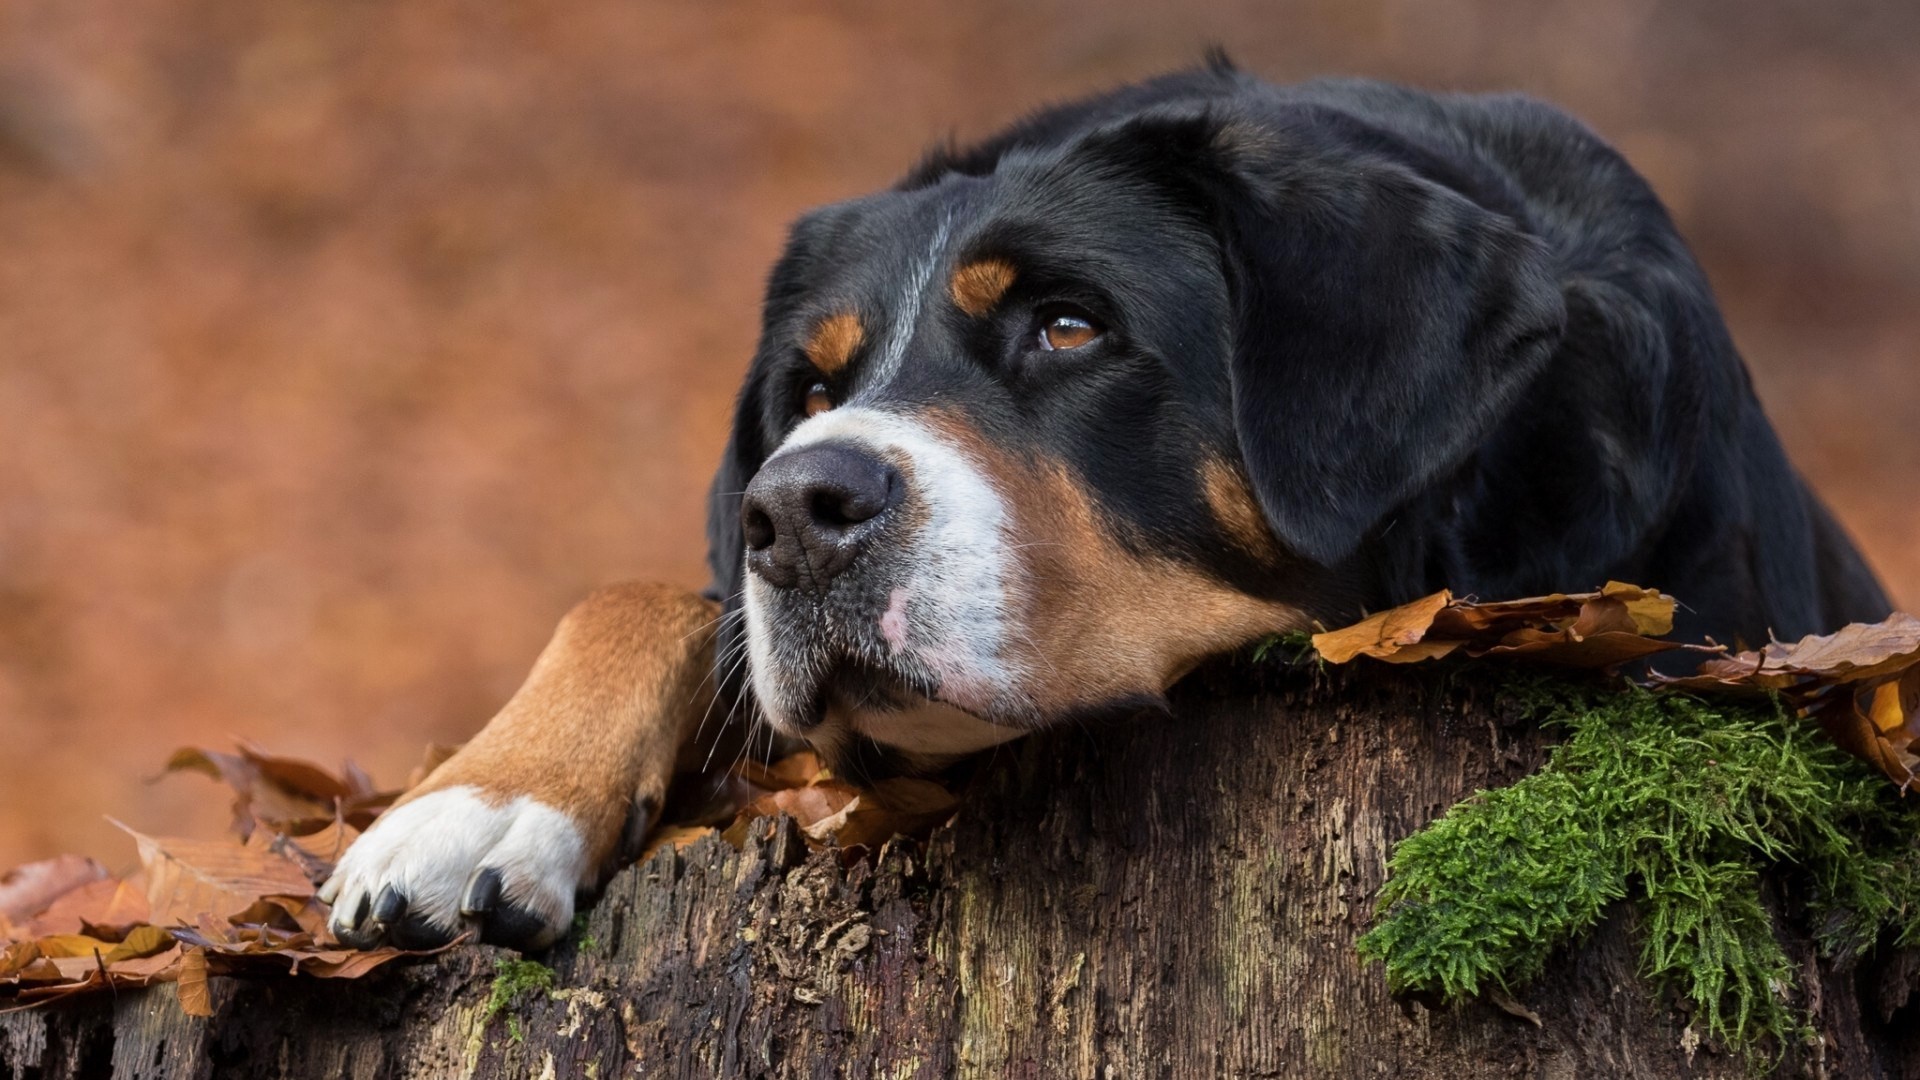 Download mobile wallpaper Dogs, Dog, Leaf, Animal, Sennenhund for free.